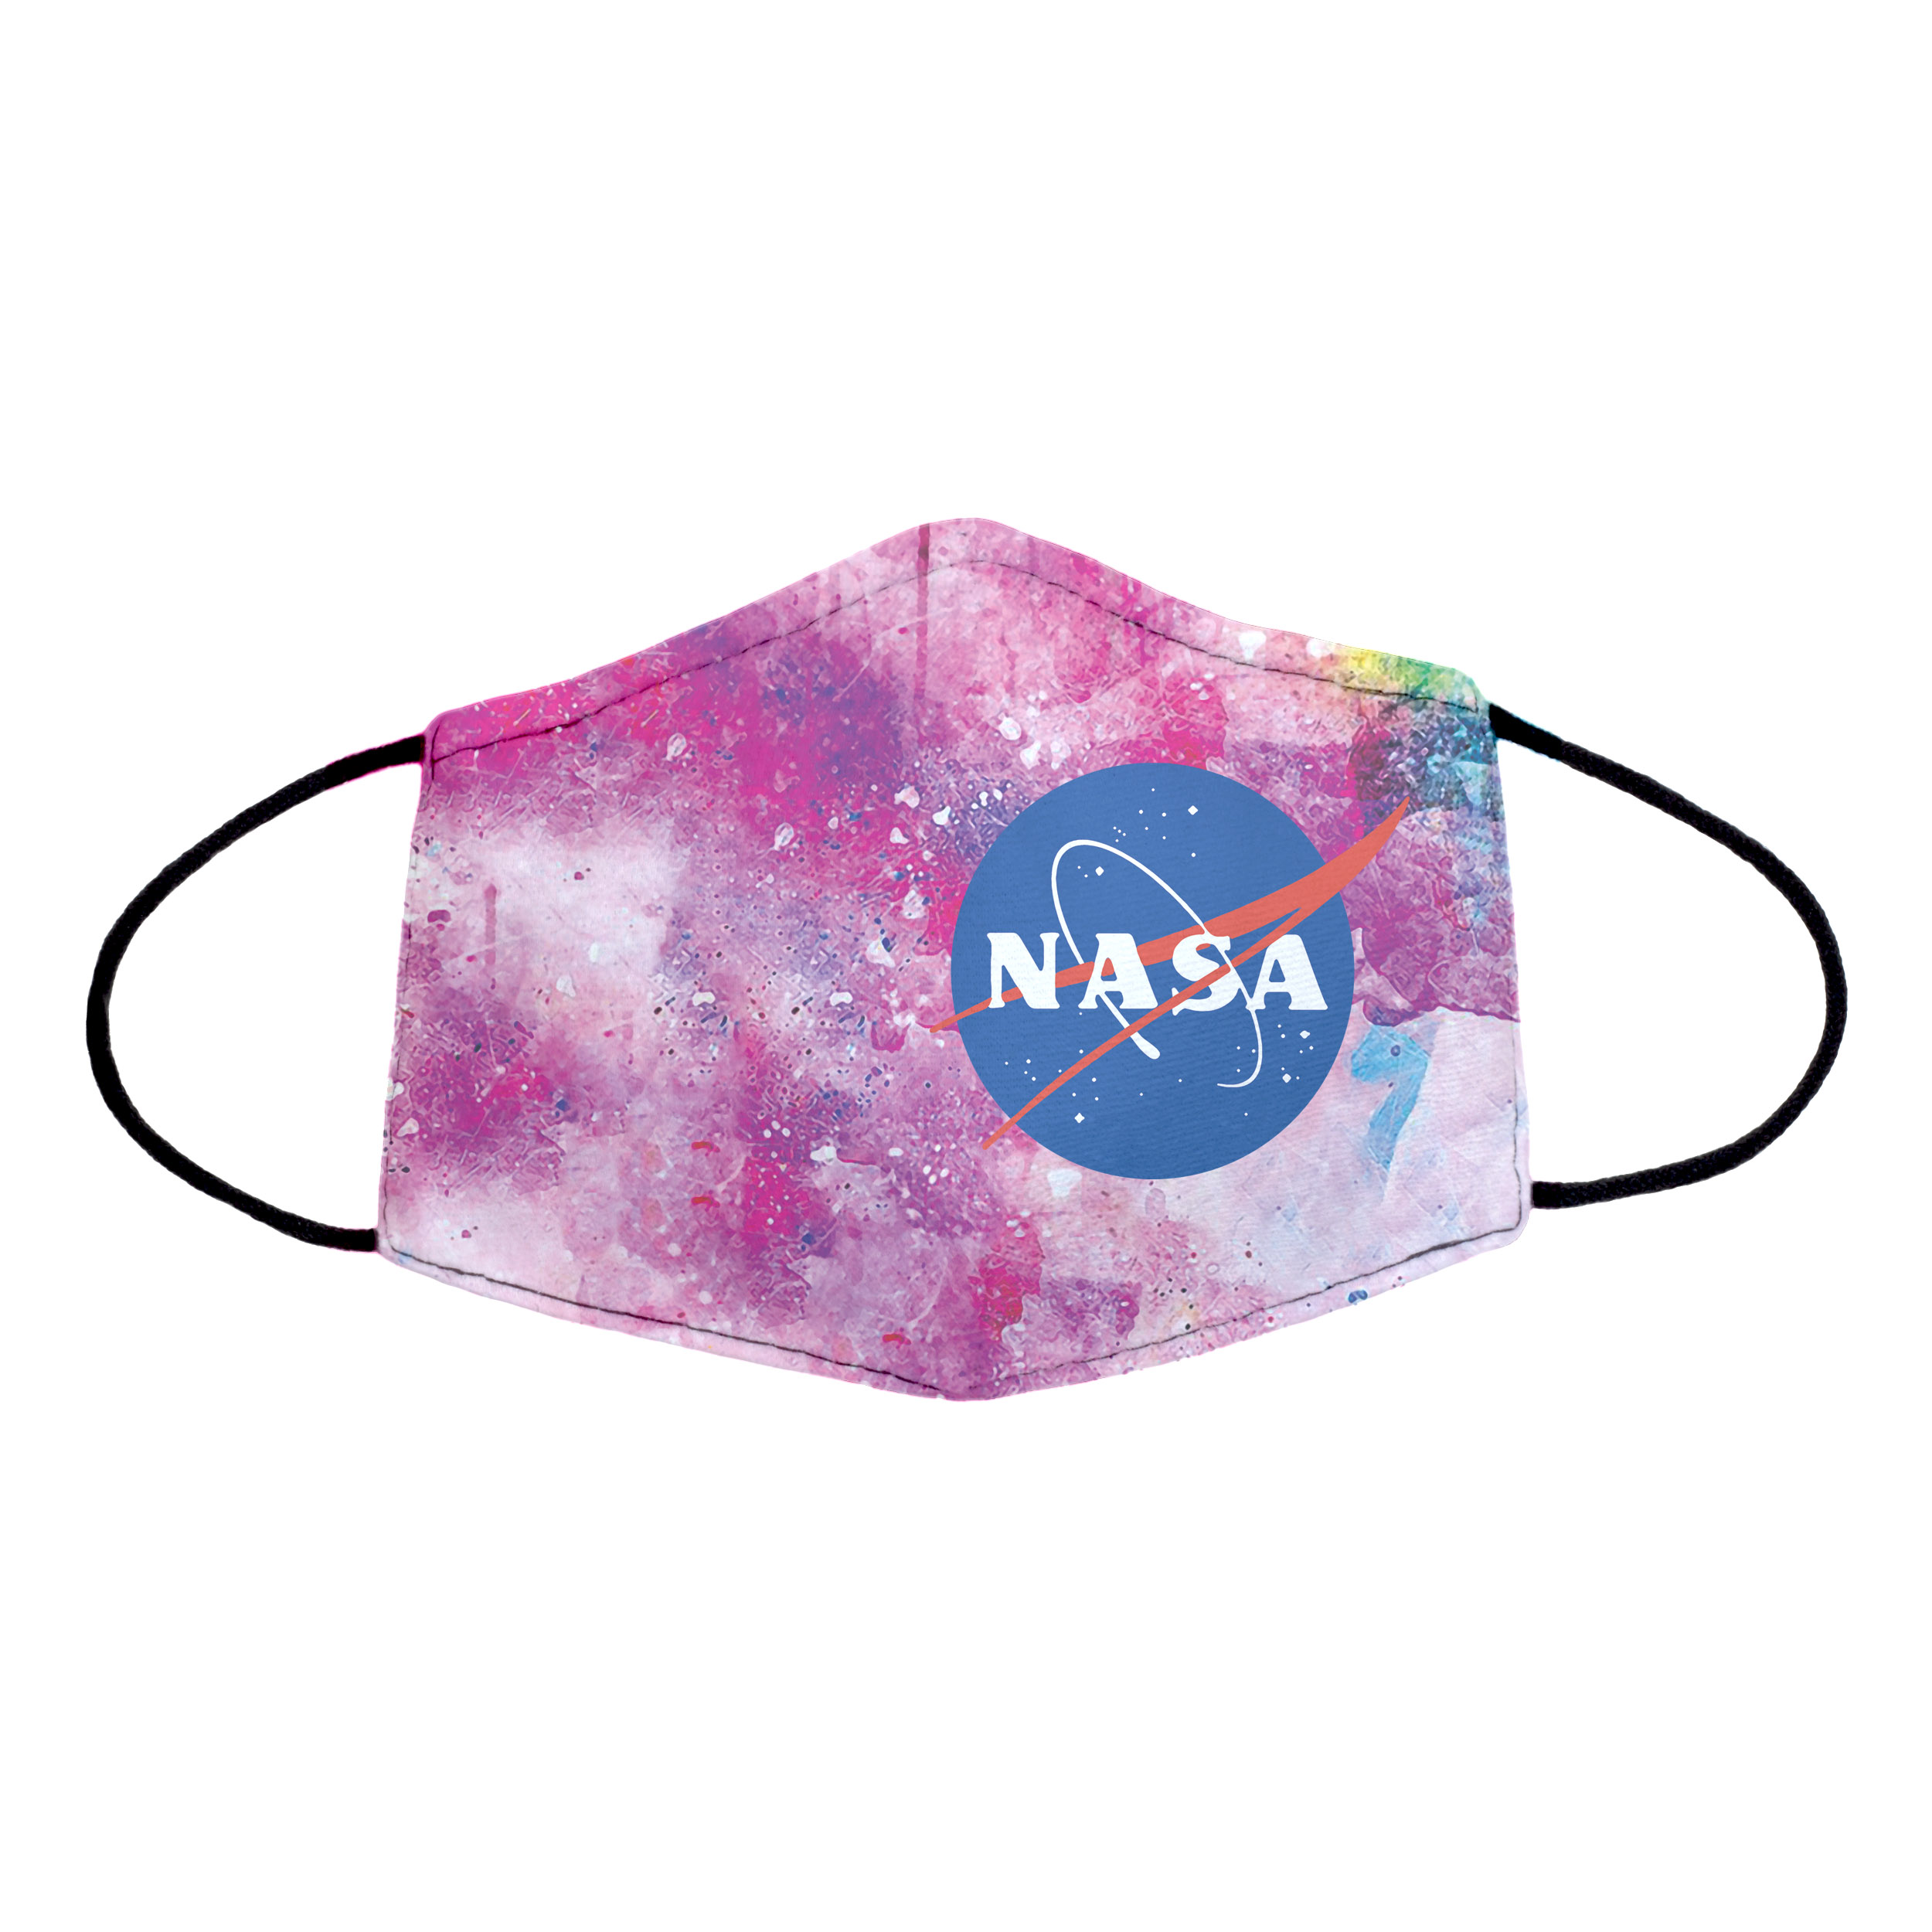 ماسک پارچه ای طرح ناسا کد 51fa3